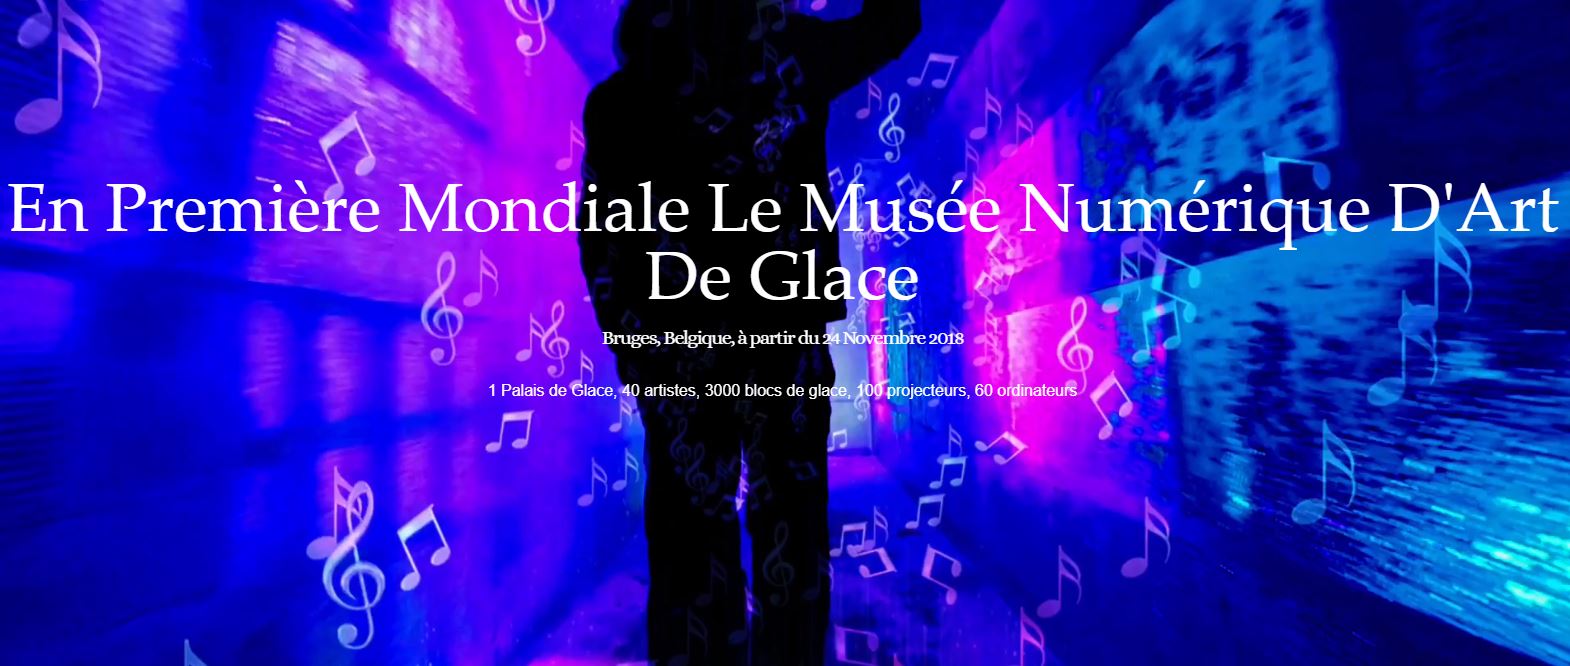 Palais de Glace Numérique à Bruges jusqu’au 6 janvier 2019 | Blog Lille Saint-Maurice Pellevoisin